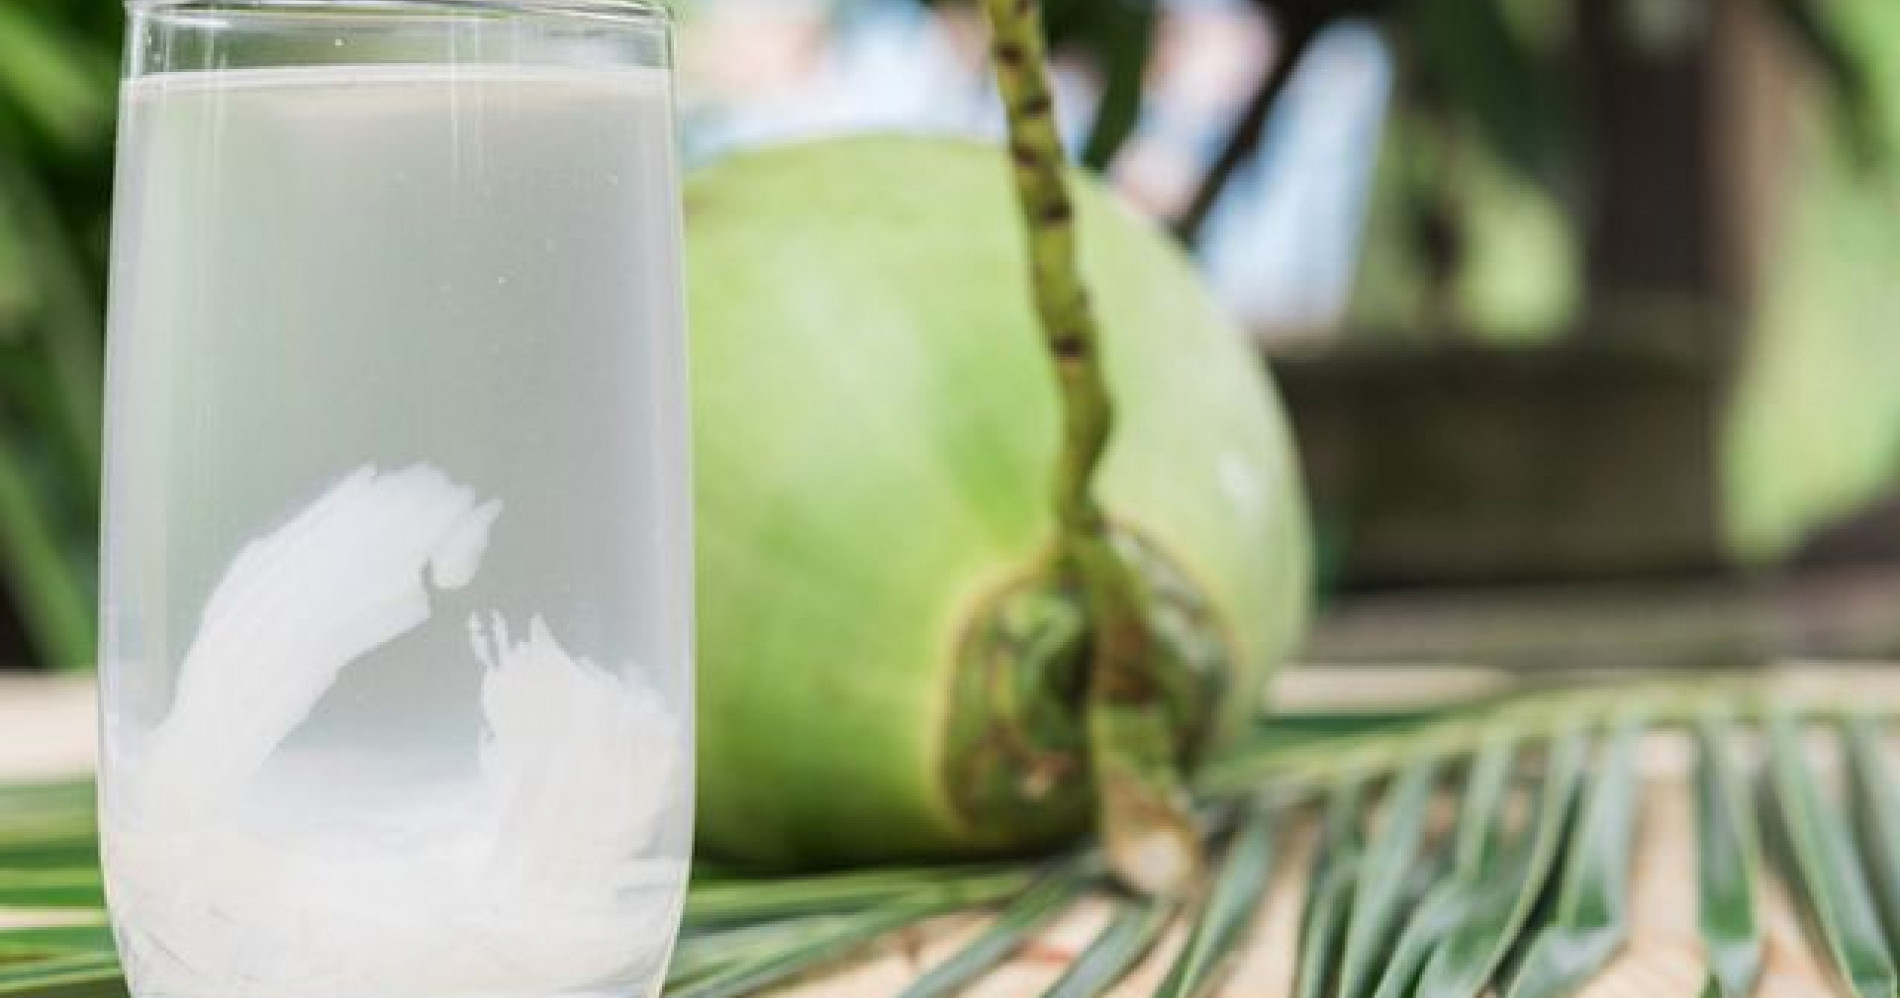 Manfaat air kelapa untuk sistem kekebalan tubuh (Sumber gambar: klikdokter.com)